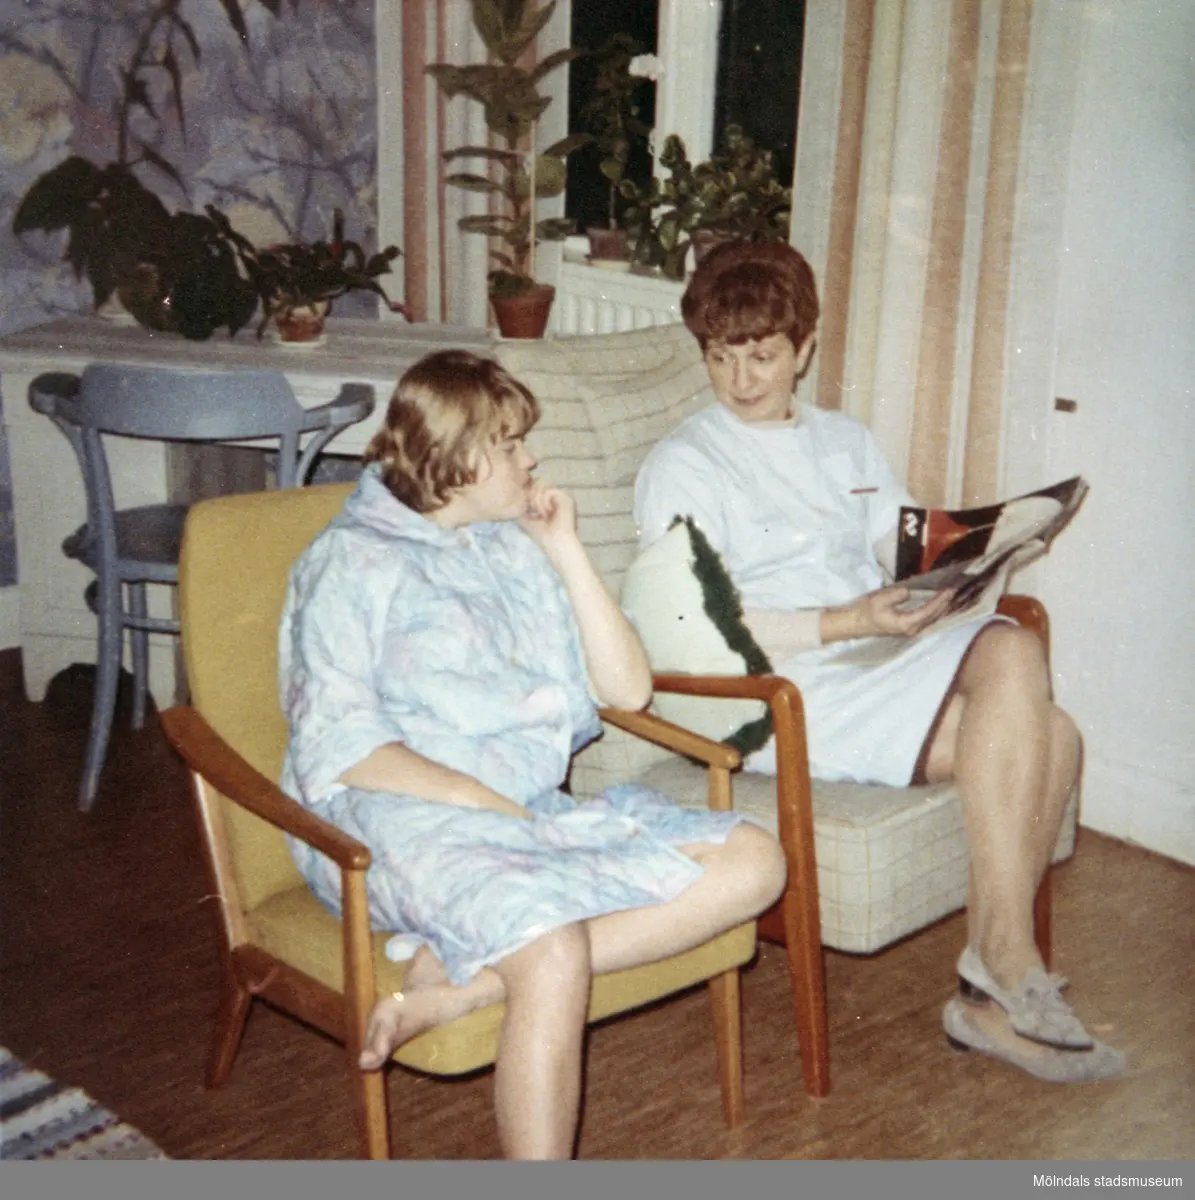 Elev och personal i vilostund på Stretered under 1970-talet.
Den tidningsläsande kvinnan är Birgitta Franzén som var anställd vid Skolhemmet Stretered 1954-1993.